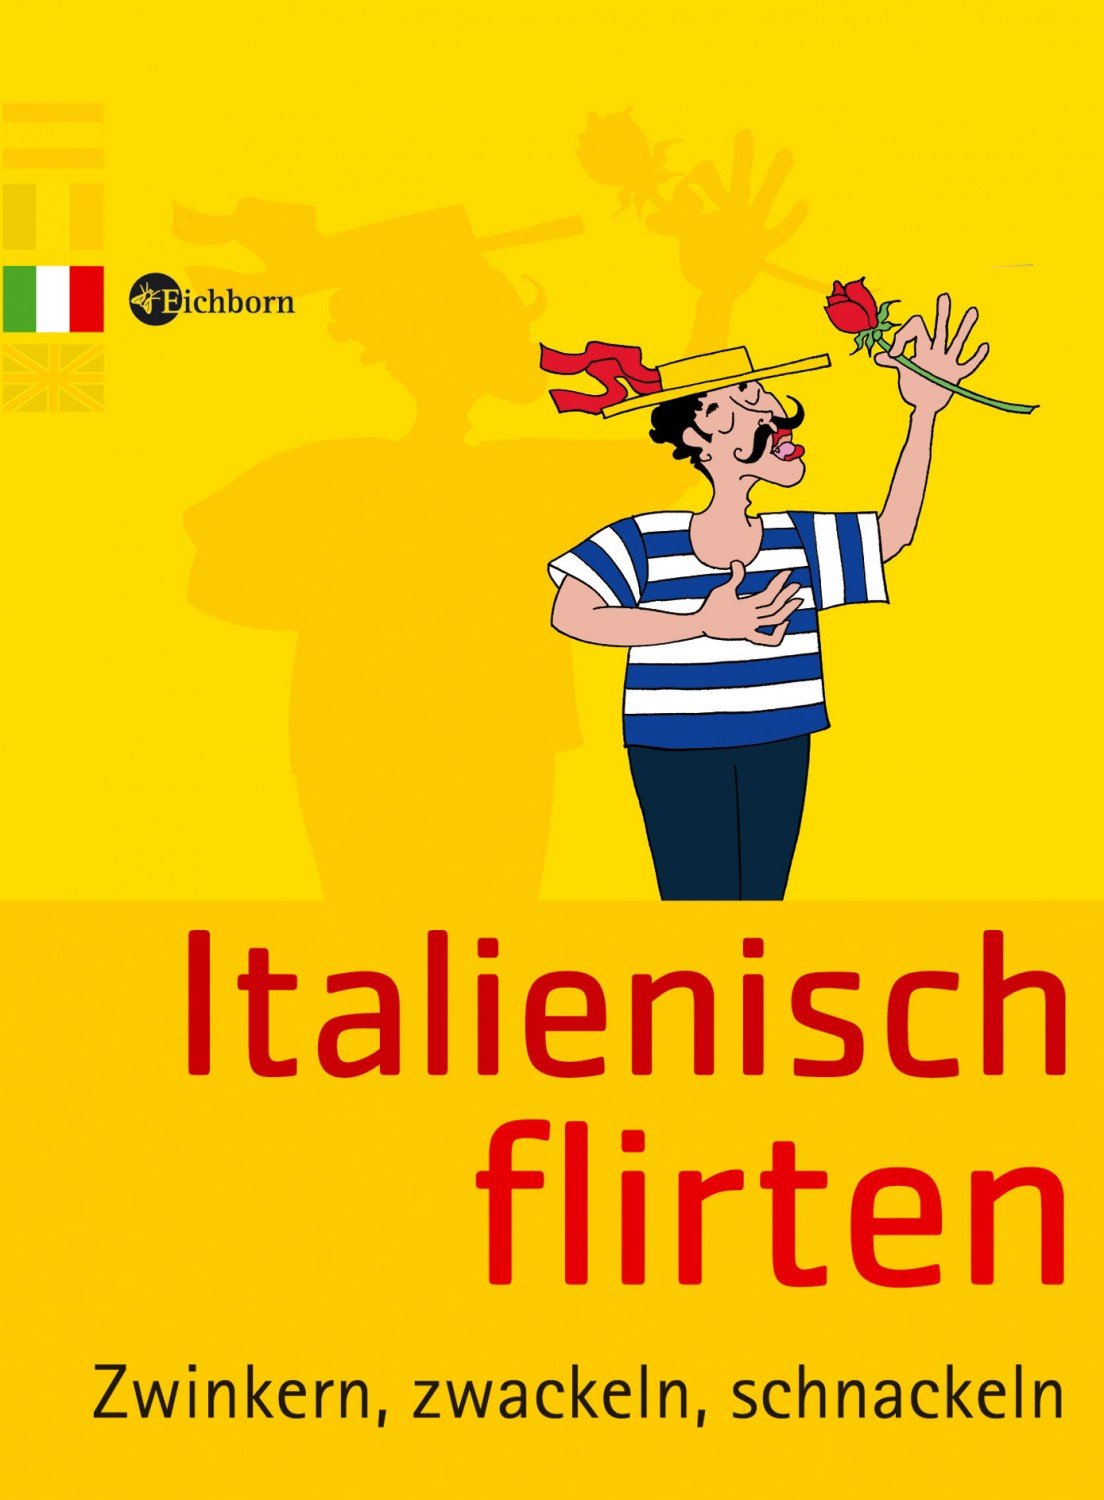 flirten - Deutsch-Italienisch Übersetzung | PONS